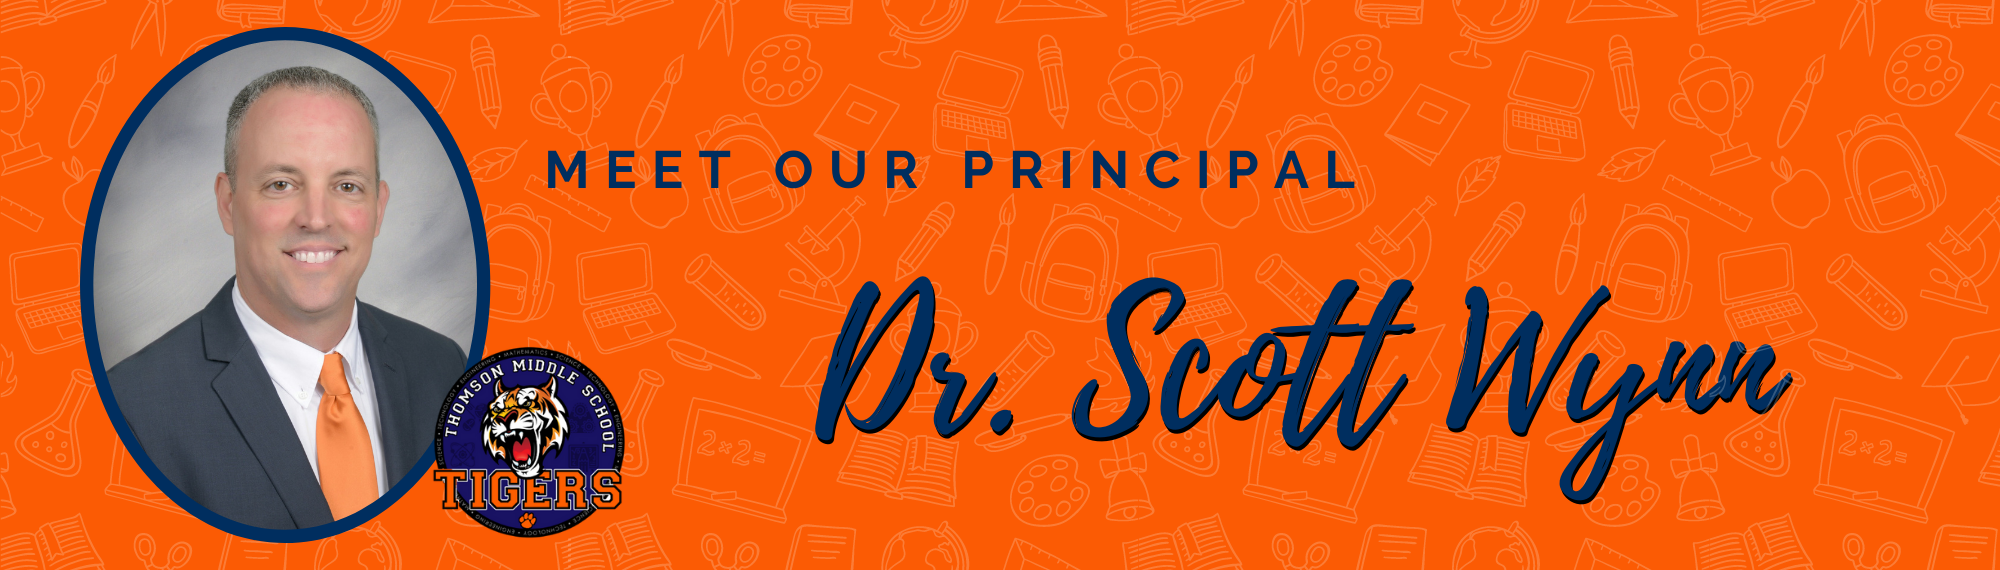 Meet Our Principal, Dr. Scott Wynn